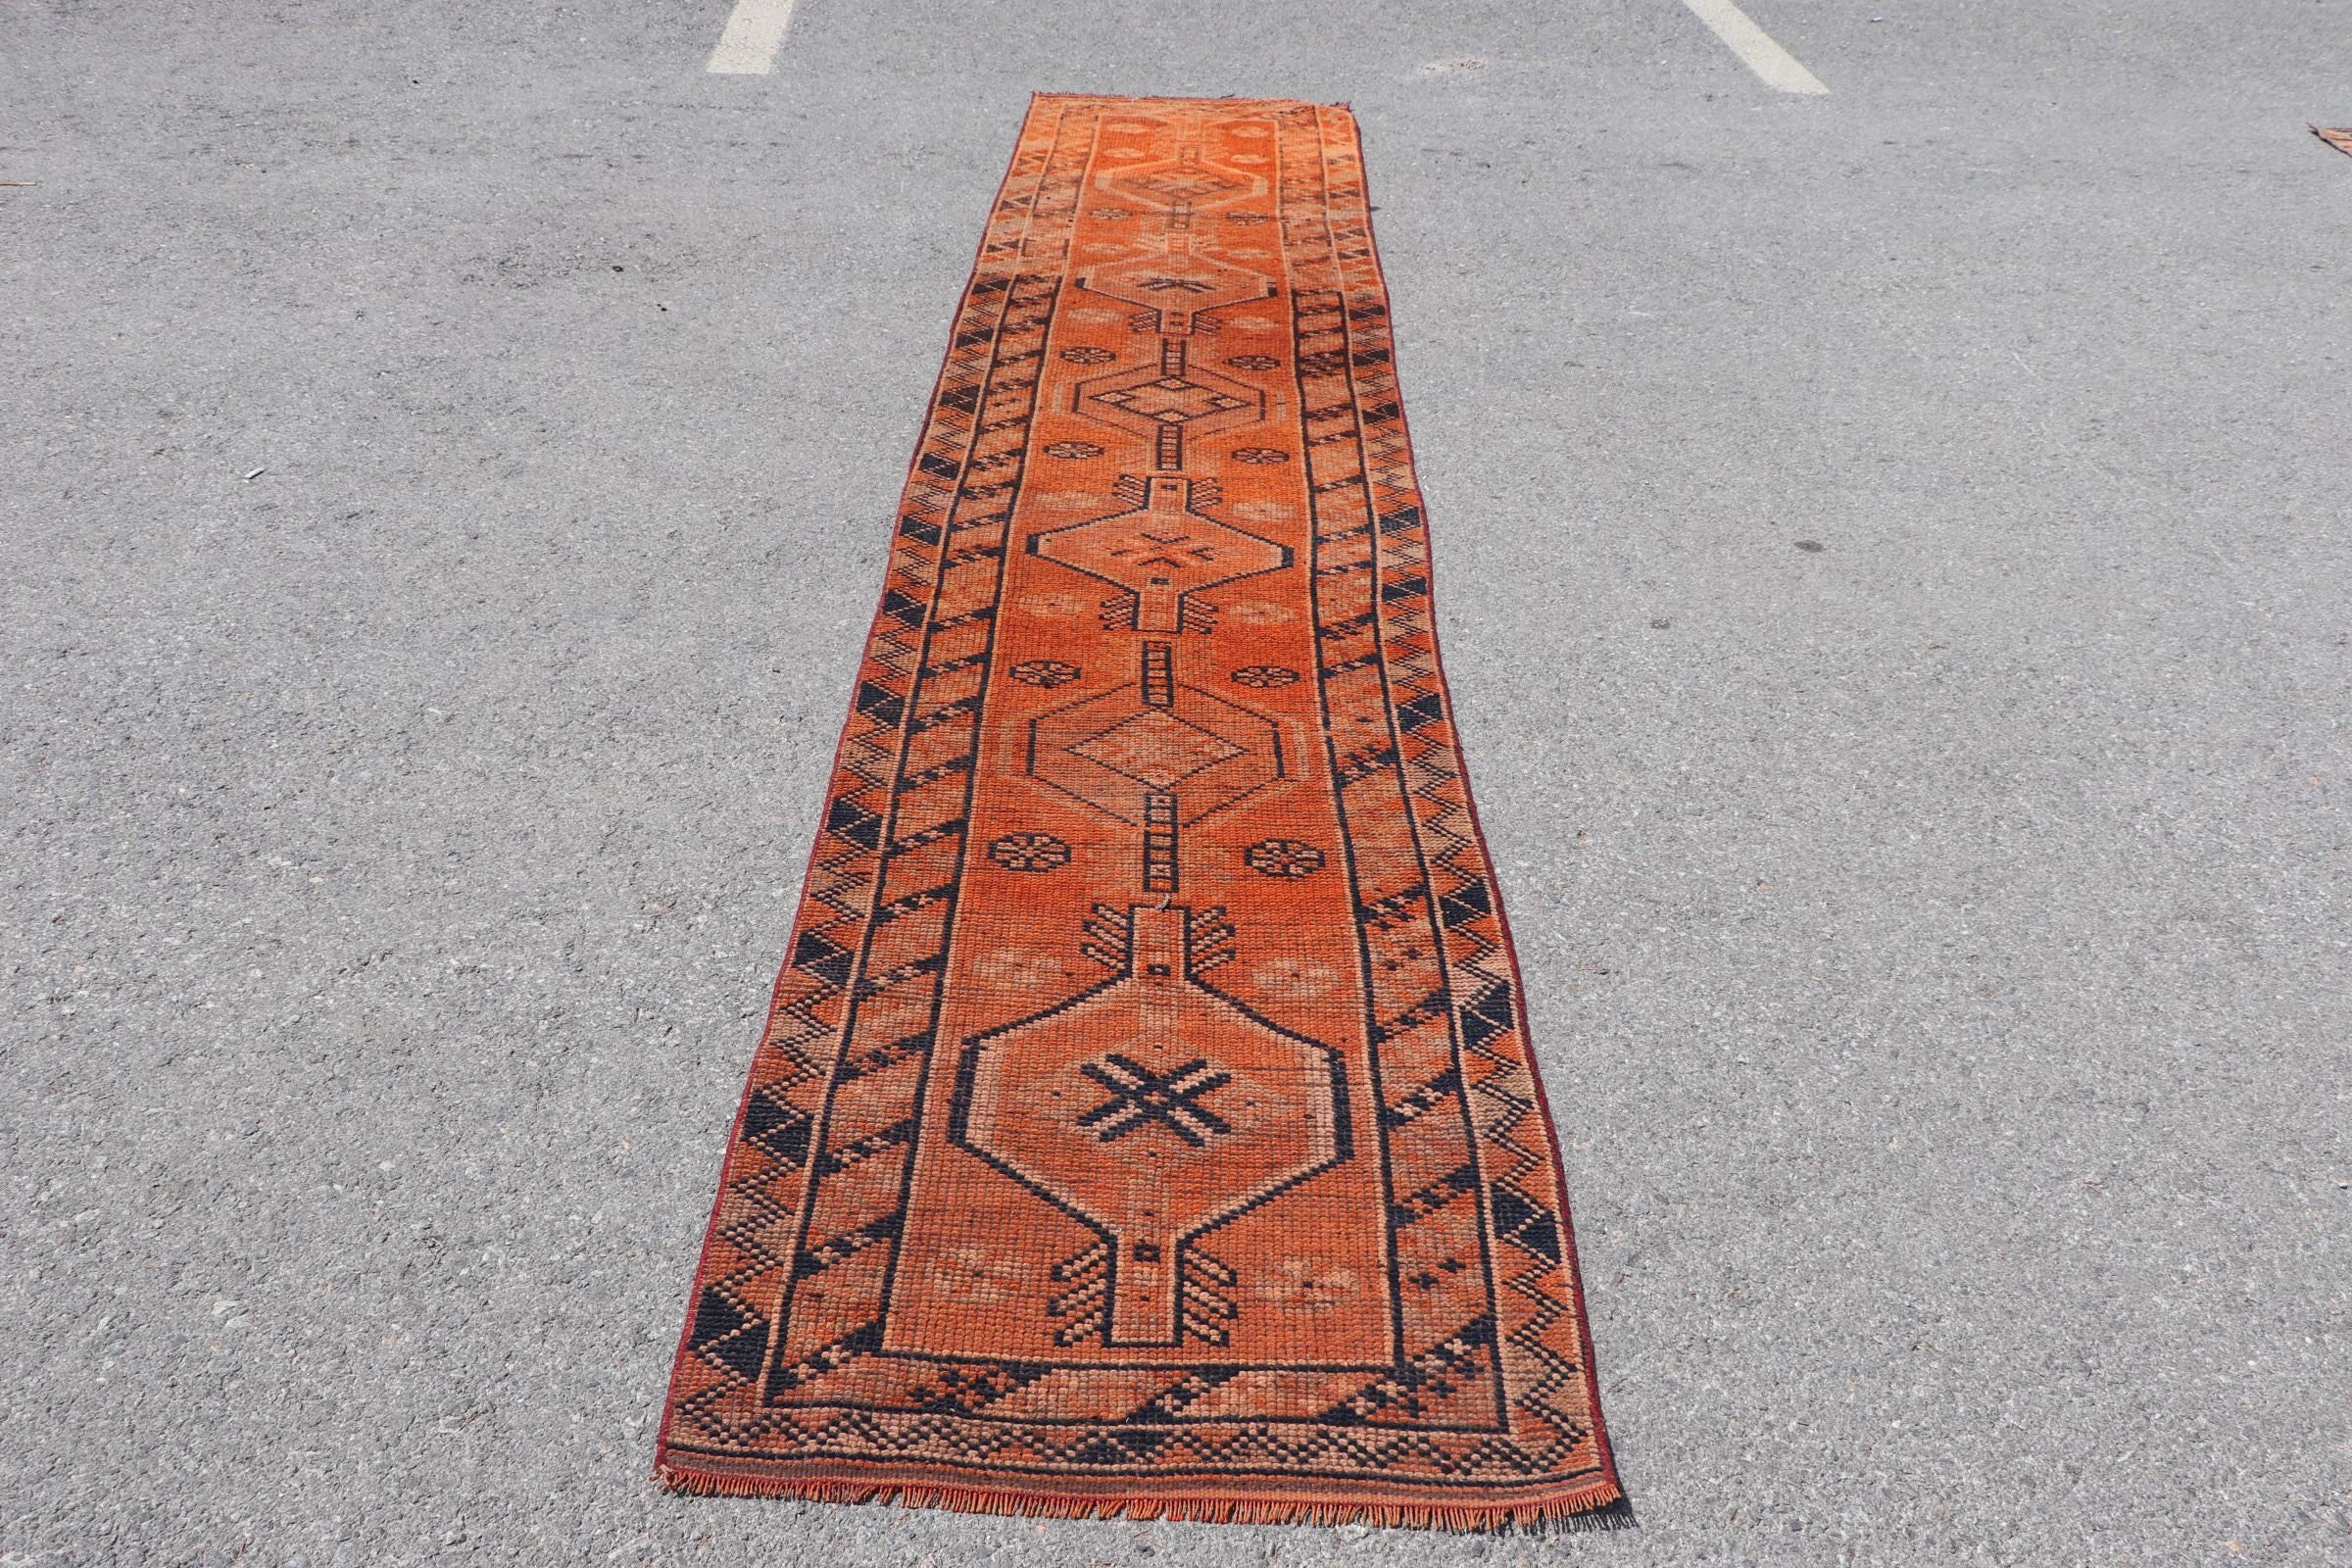 Moroccan Rug, Turkish Rugs, Rugs for Hallway, Vintage Rugs, Orange Floor Rug, 2.5x11.9 ft Runner Rug, Kitchen Rug, Corridor Rug, Cool Rugs